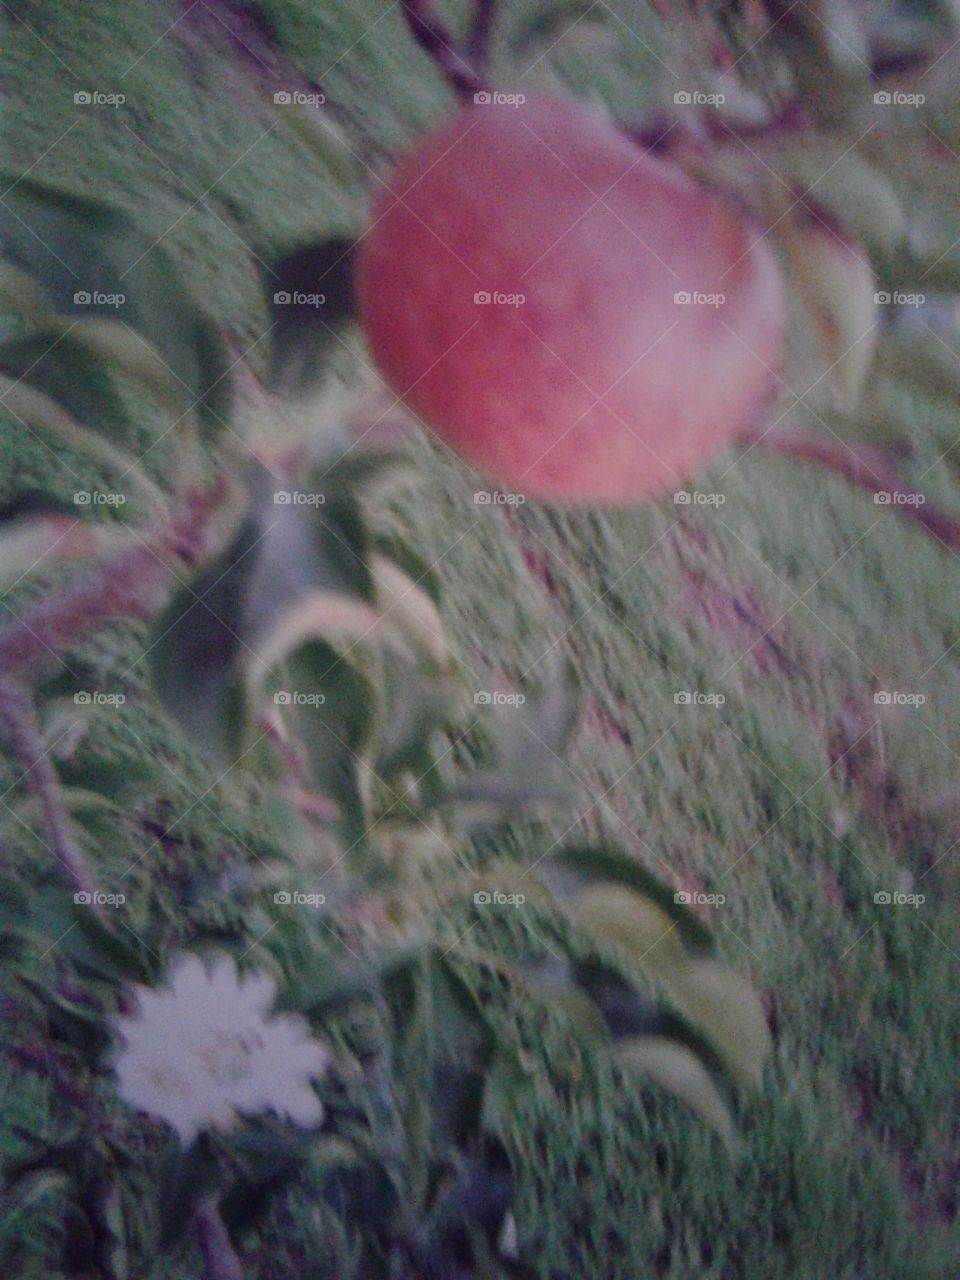 Apple fruit & Flower